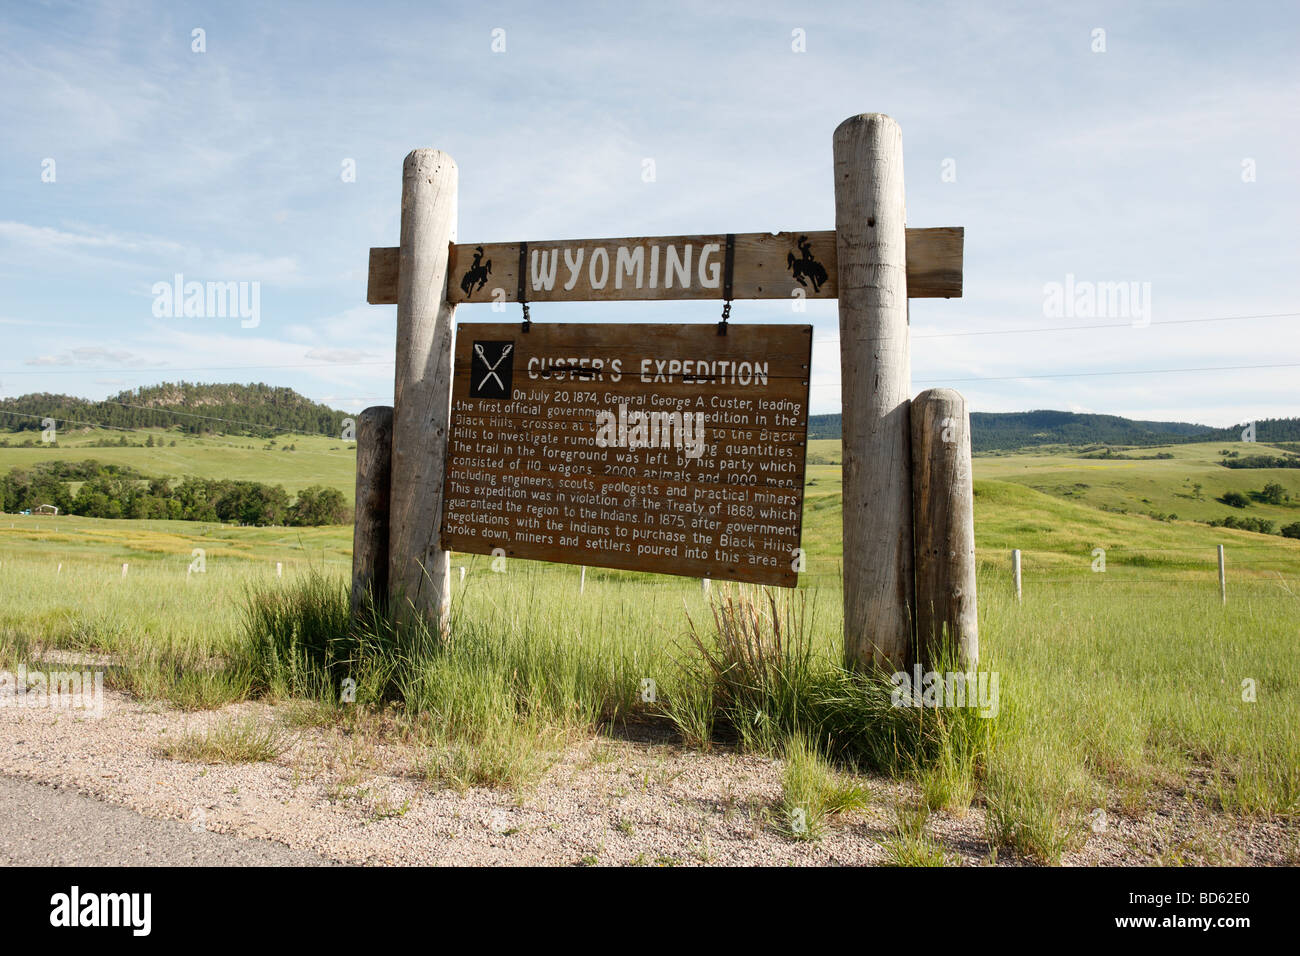 Un signe en zone rurale près de la frontière du Wyoming SD décrivant un Juillet 20th, 1874 Le point de passage du Général George A. Custer's expedition. Banque D'Images